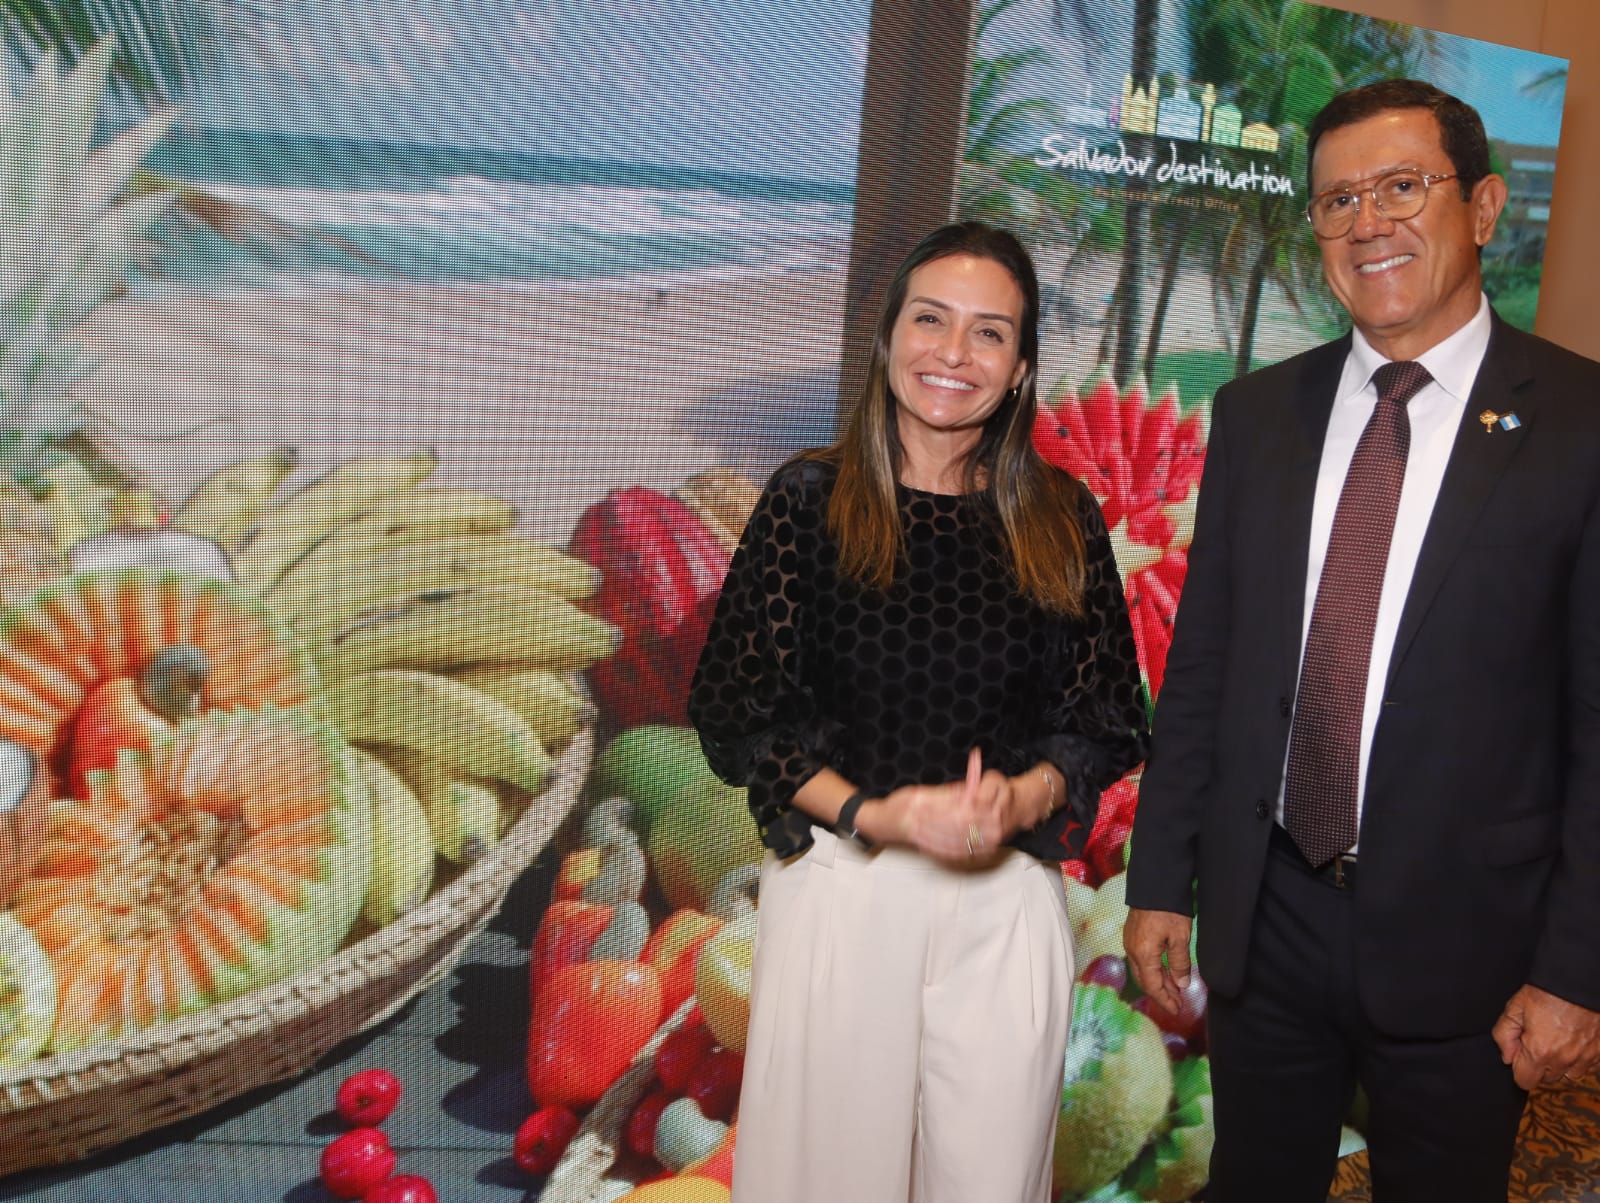 Presidente da Salvador Destination participou de evento no Copacabana Palace